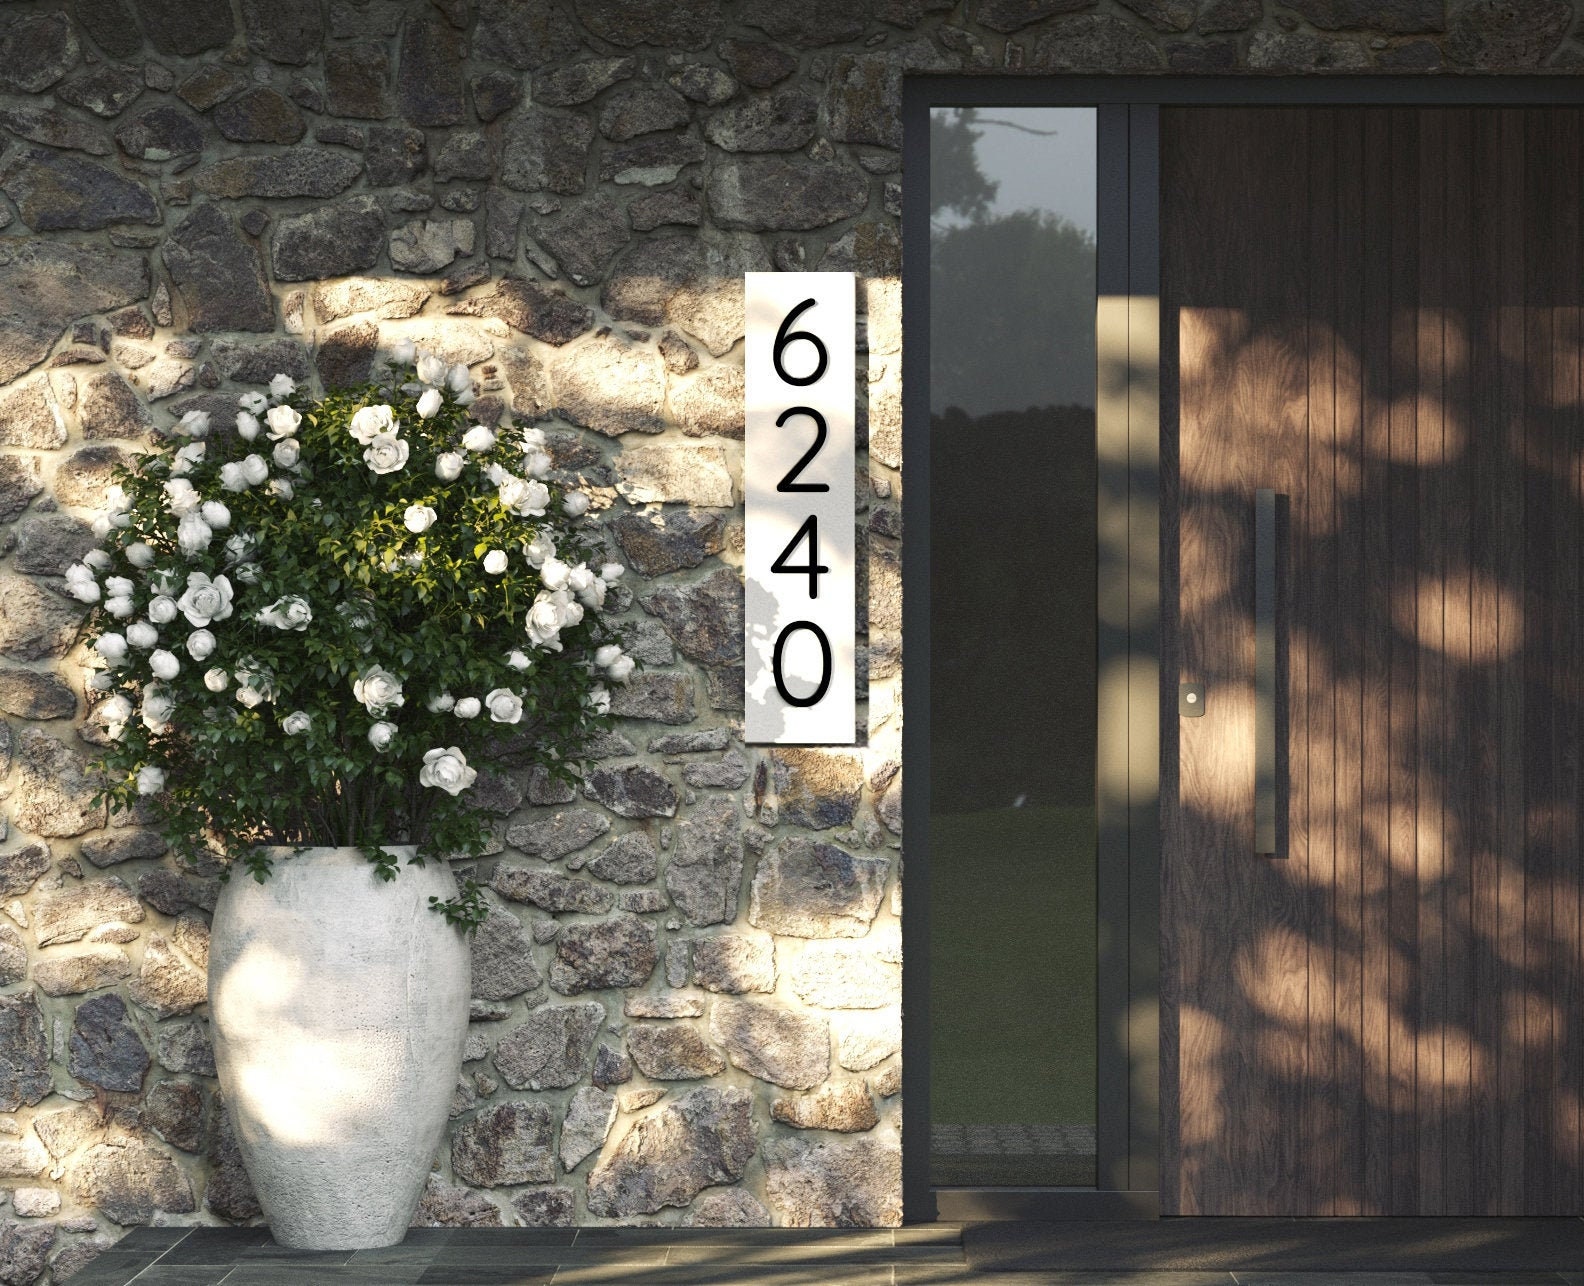 Numéro de Maison Moderne, Plaque d'adresse La Maison, Panneau Horizontal et Vertical, Numéro Numéros